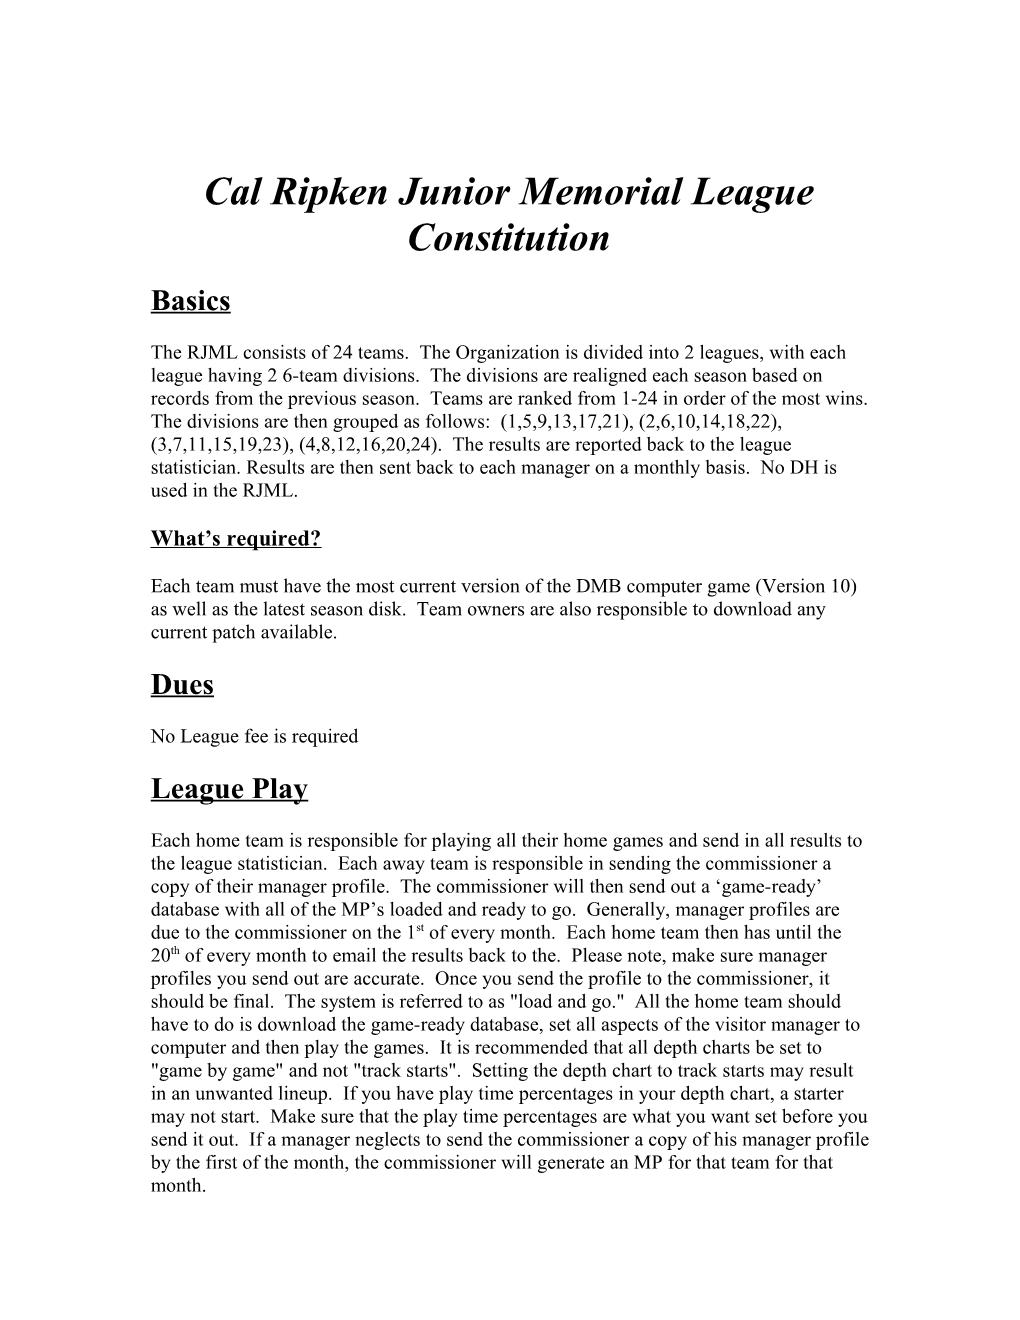 Cal Ripken Junior Memorial League Constitution